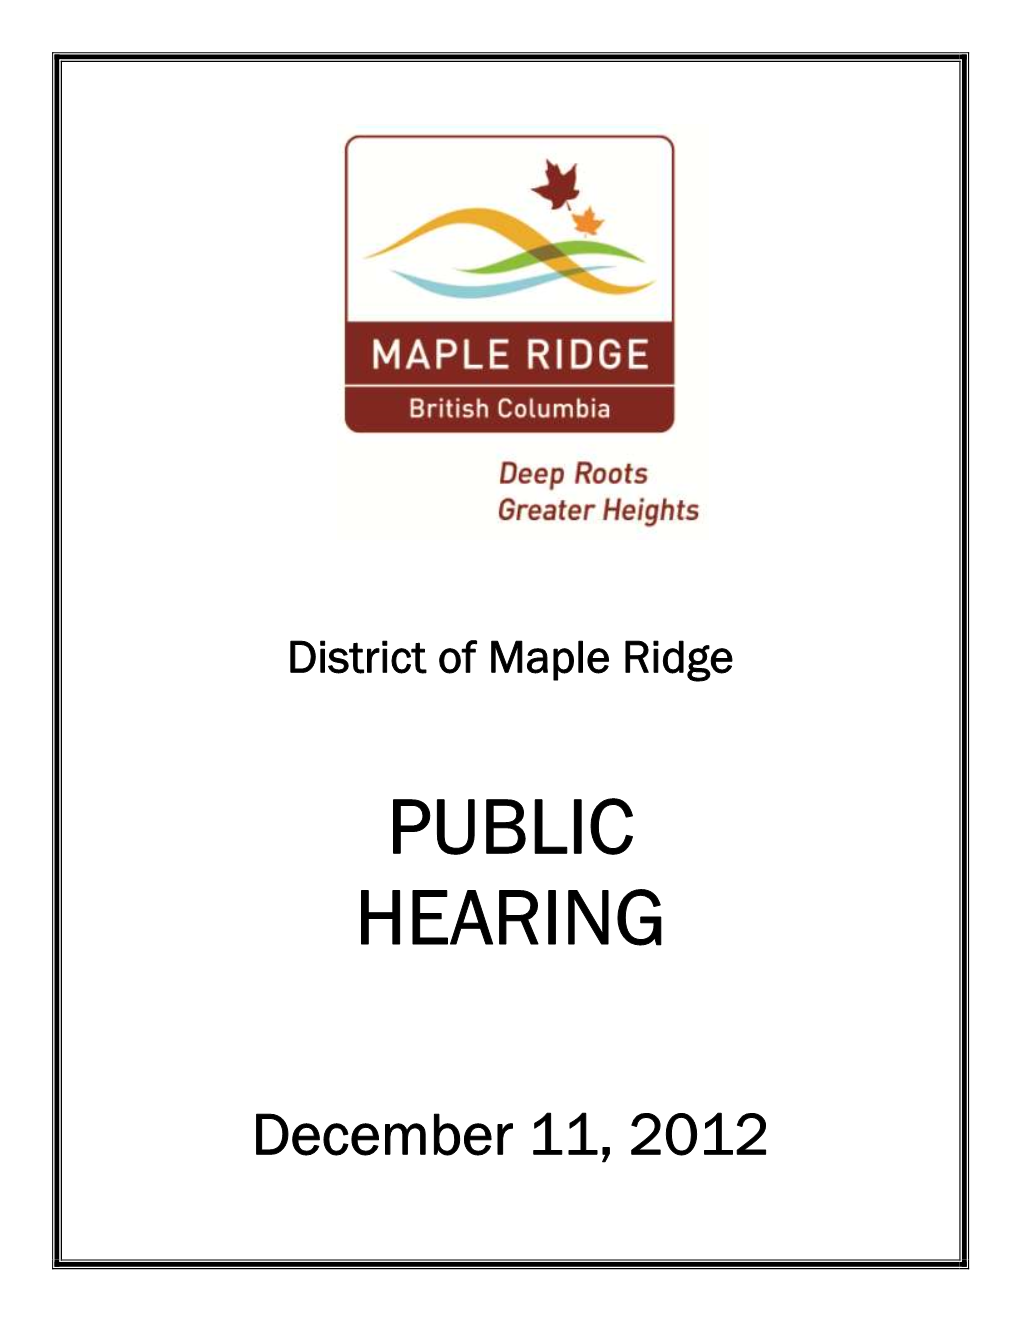 Public Hearing Agenda December 11, 2012